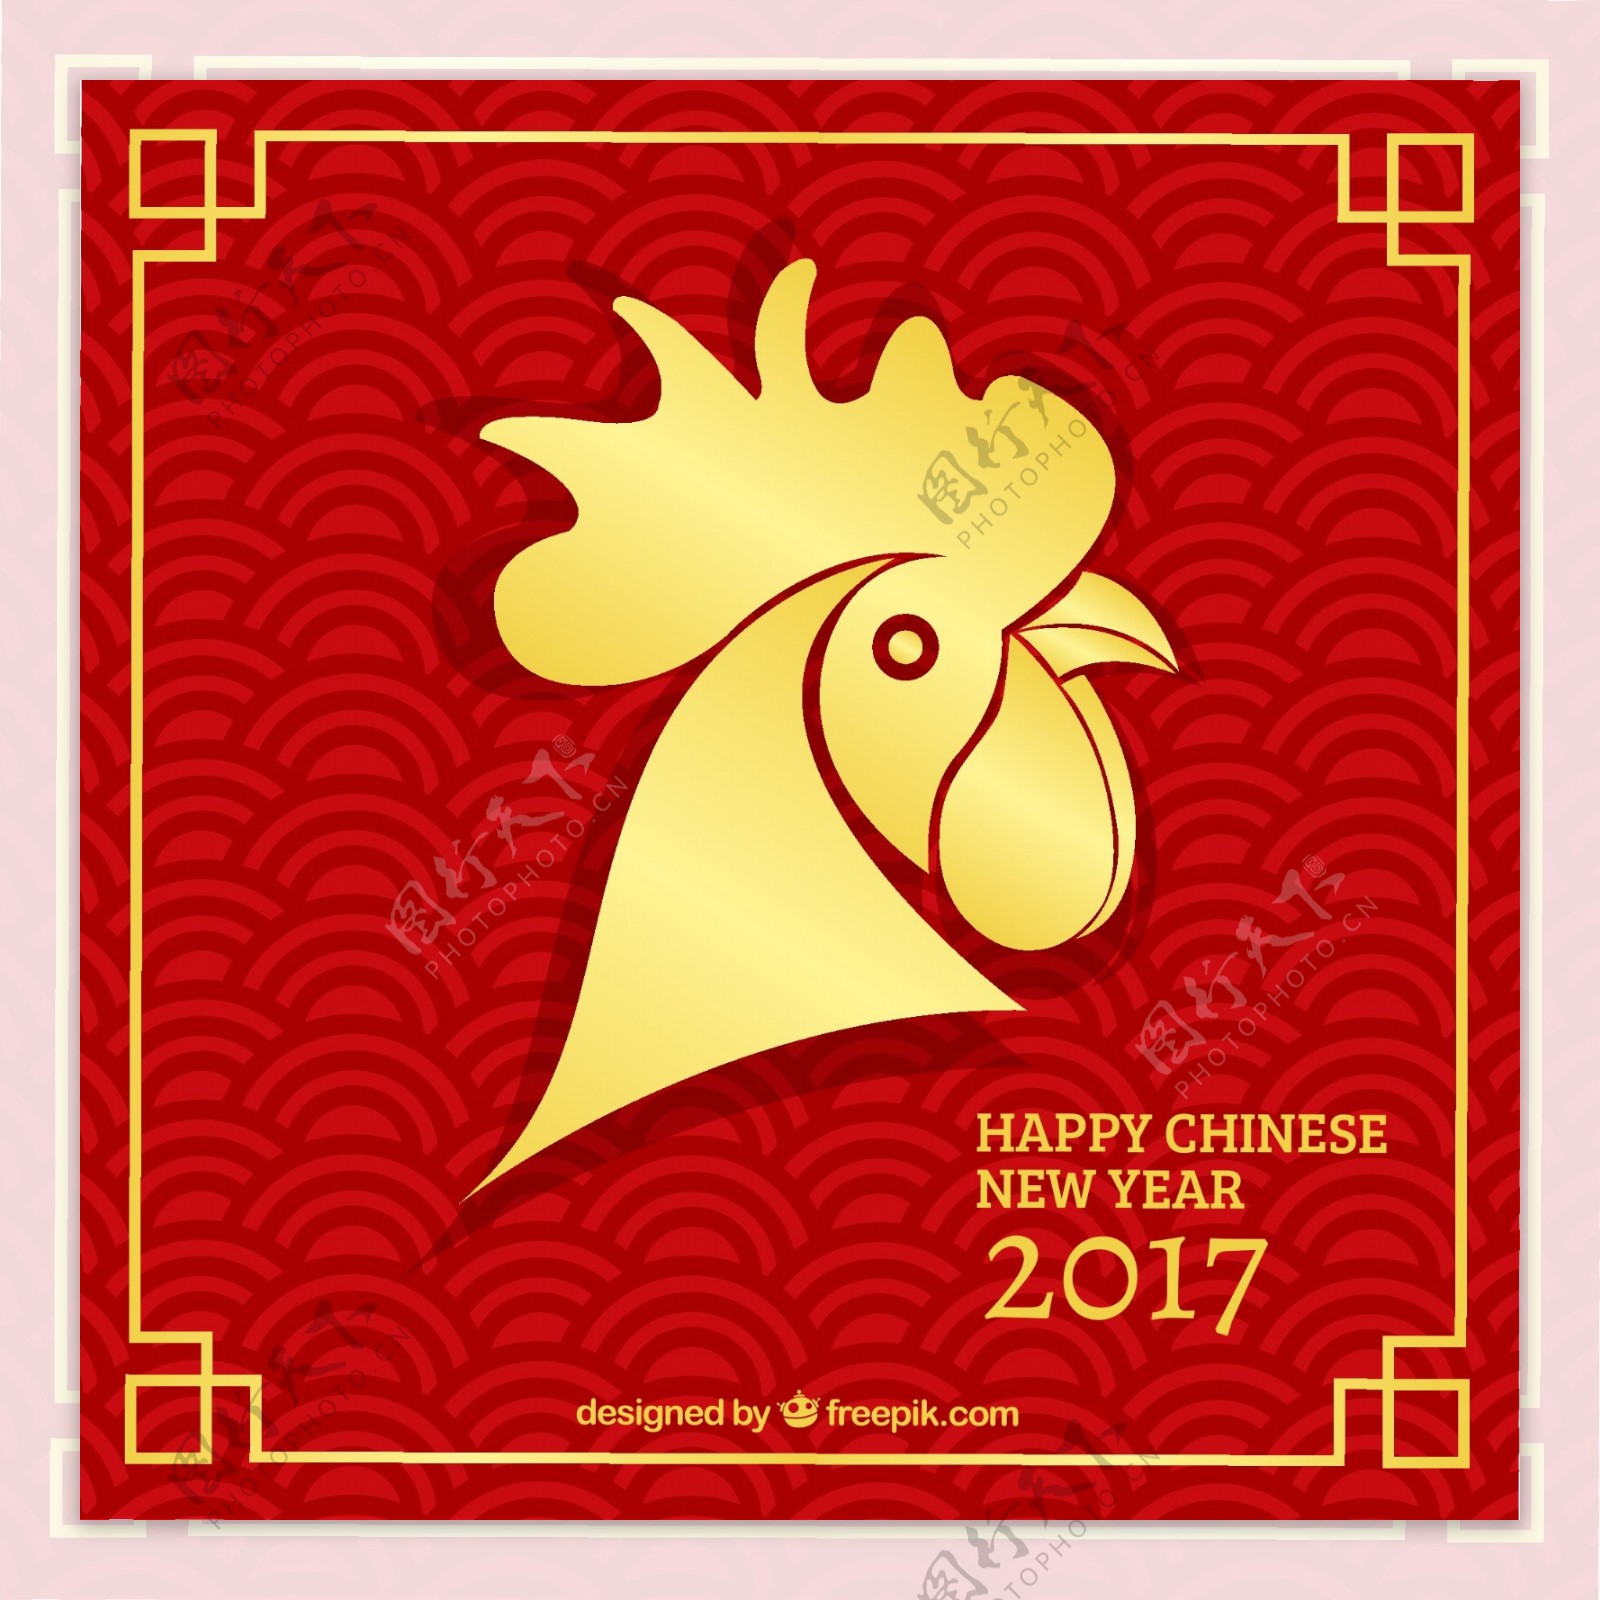 中国农历新年鸡年